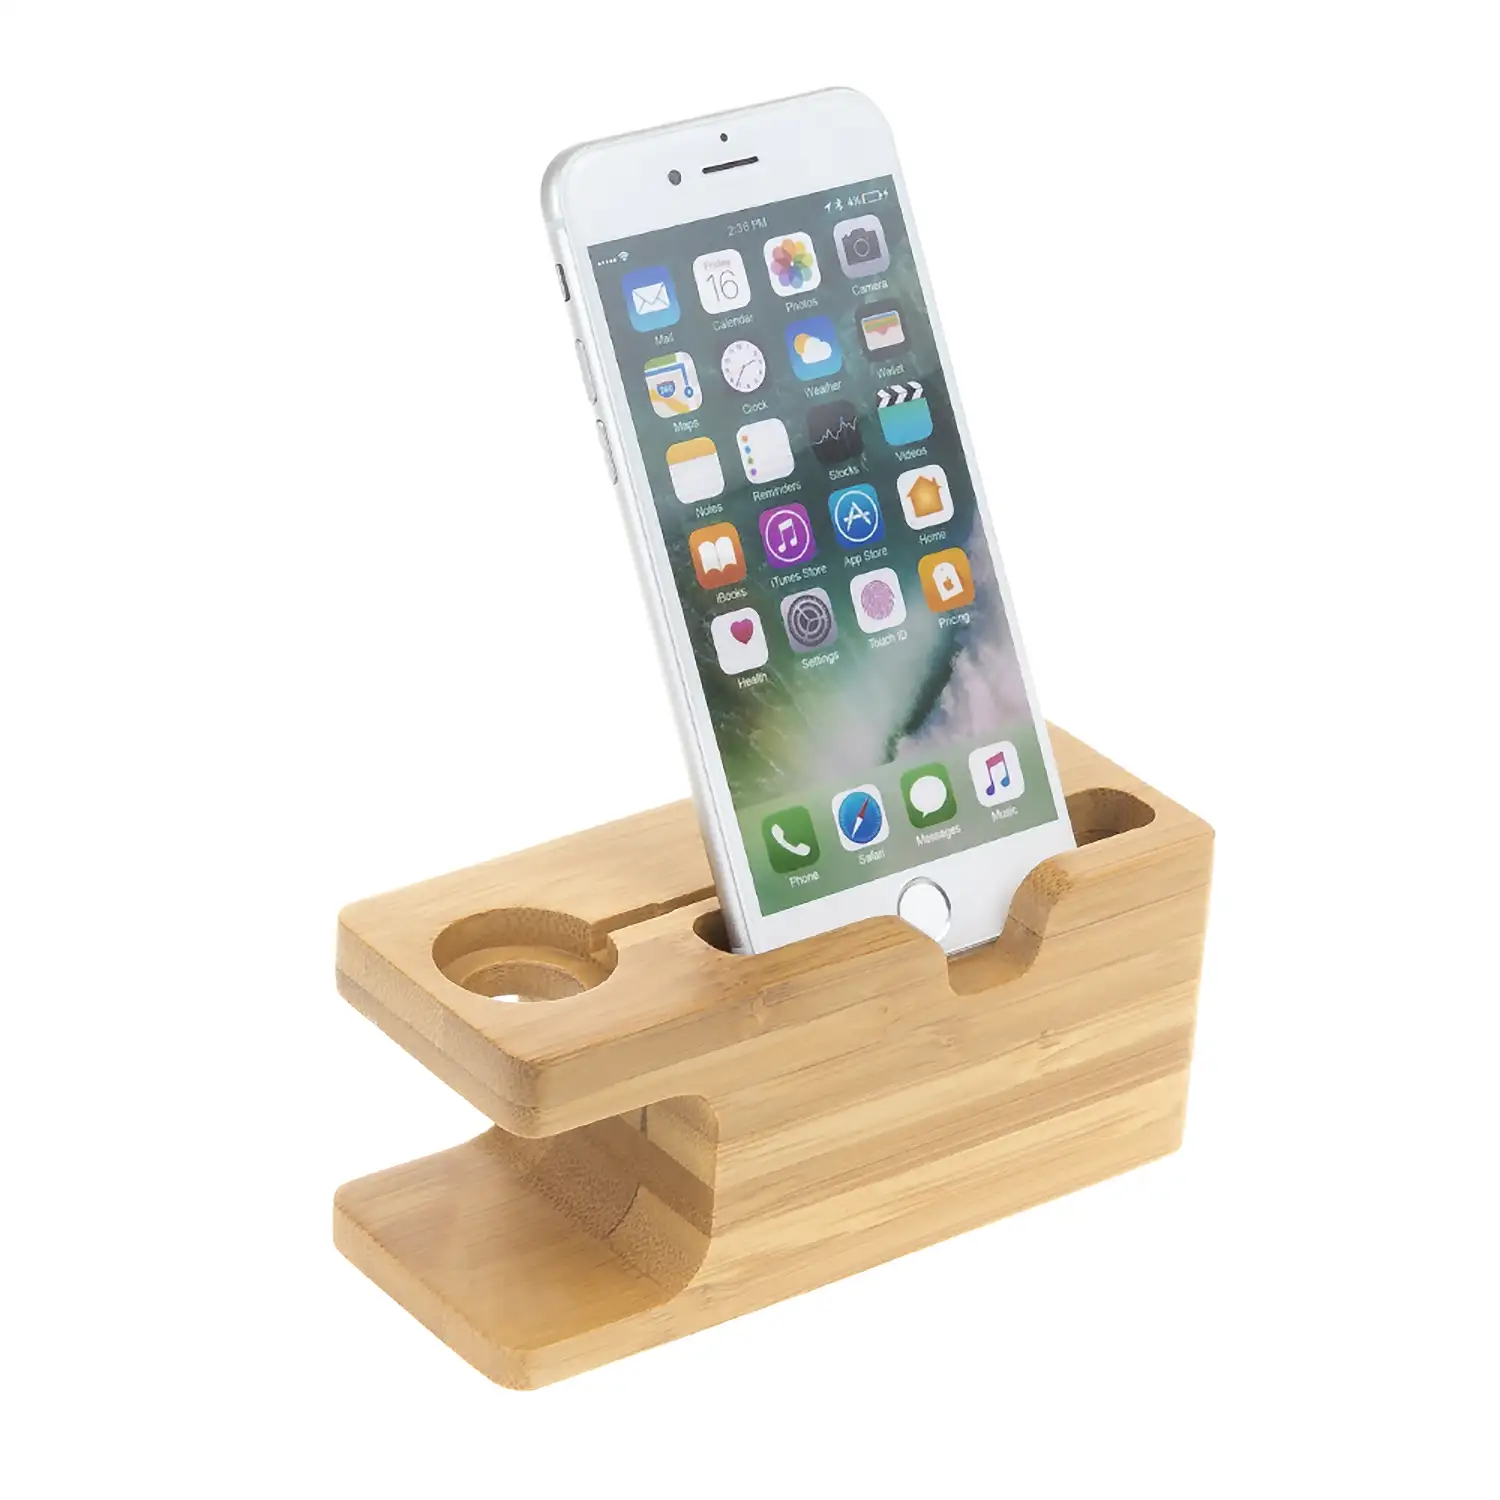 Soporte de madera para smartphone y Apple Watch, con organizador de cables.